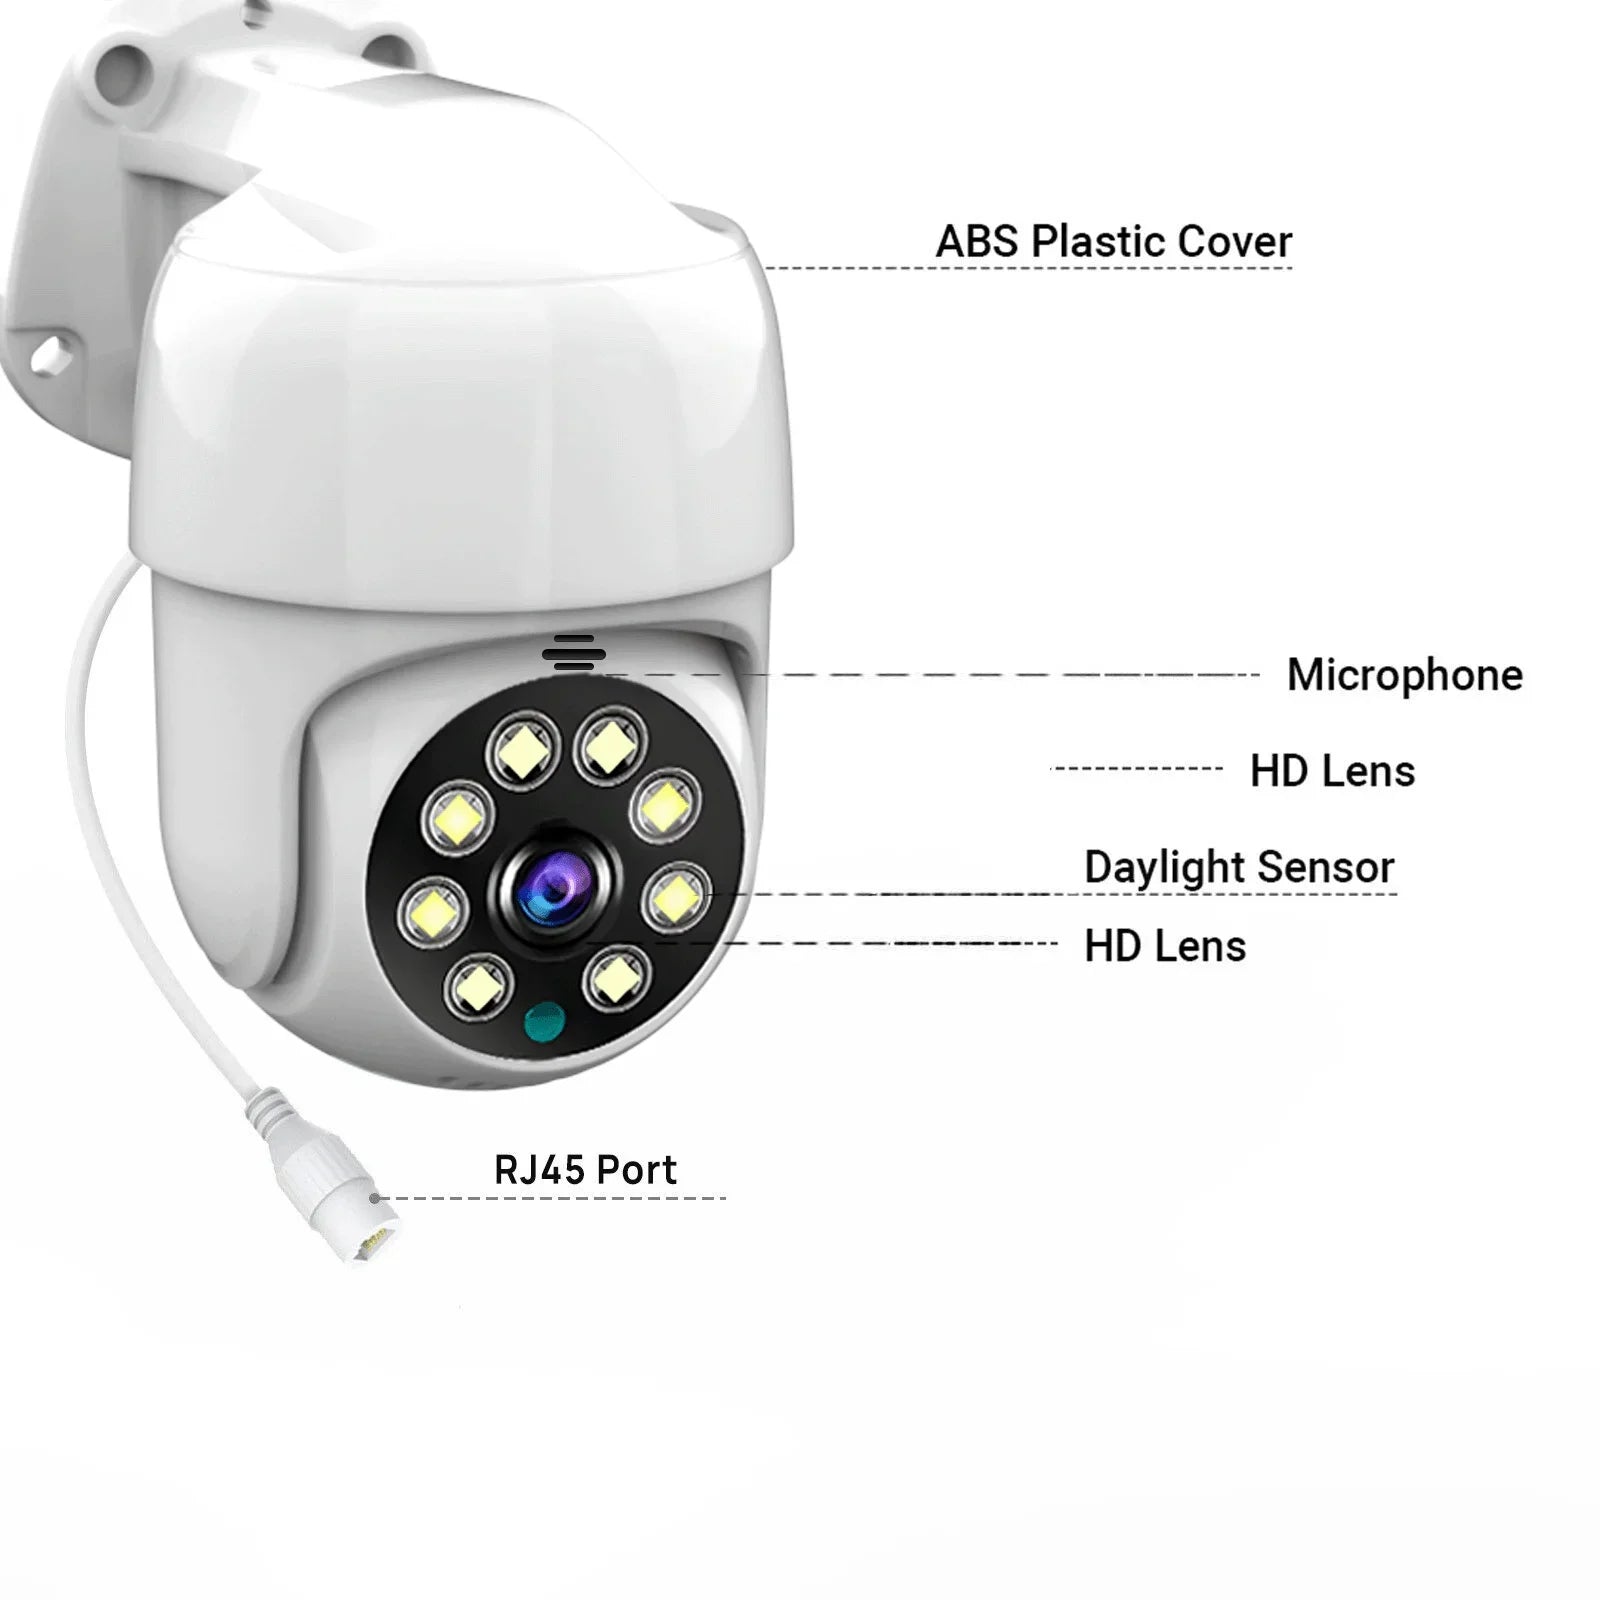 Kit de Câmera de Segurança com Detecção de Movimento e Inteligência Artificial para Detecção Humana: Proteção Avançada para seu Espaço - IA De Ofertas